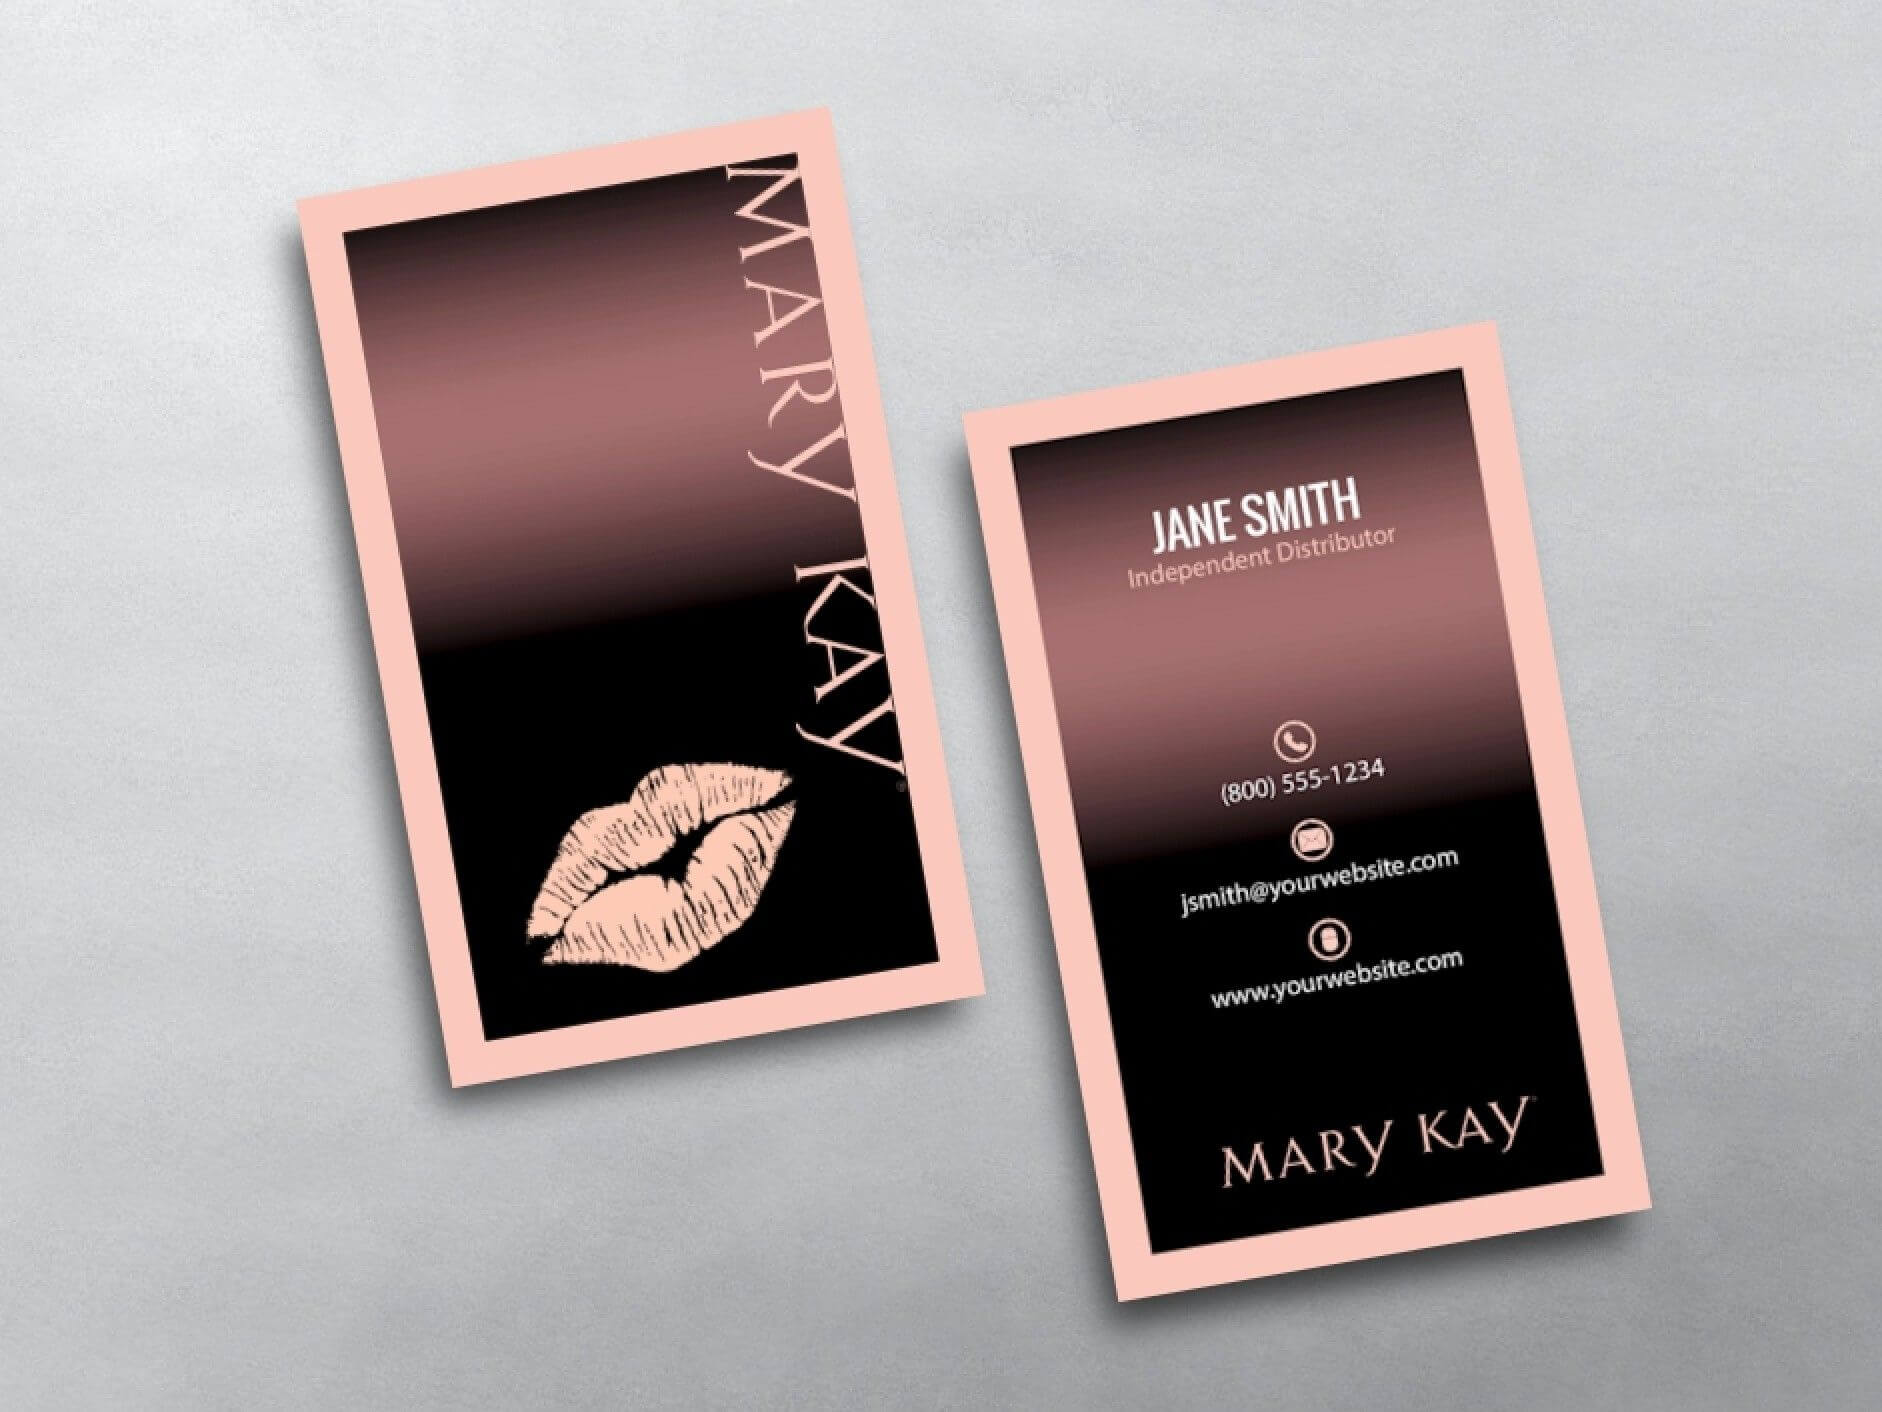 Mary Kay Business Cards | Mary Kay, Mary Kay Cosmetics, Free In Mary Kay Business Cards Templates Free